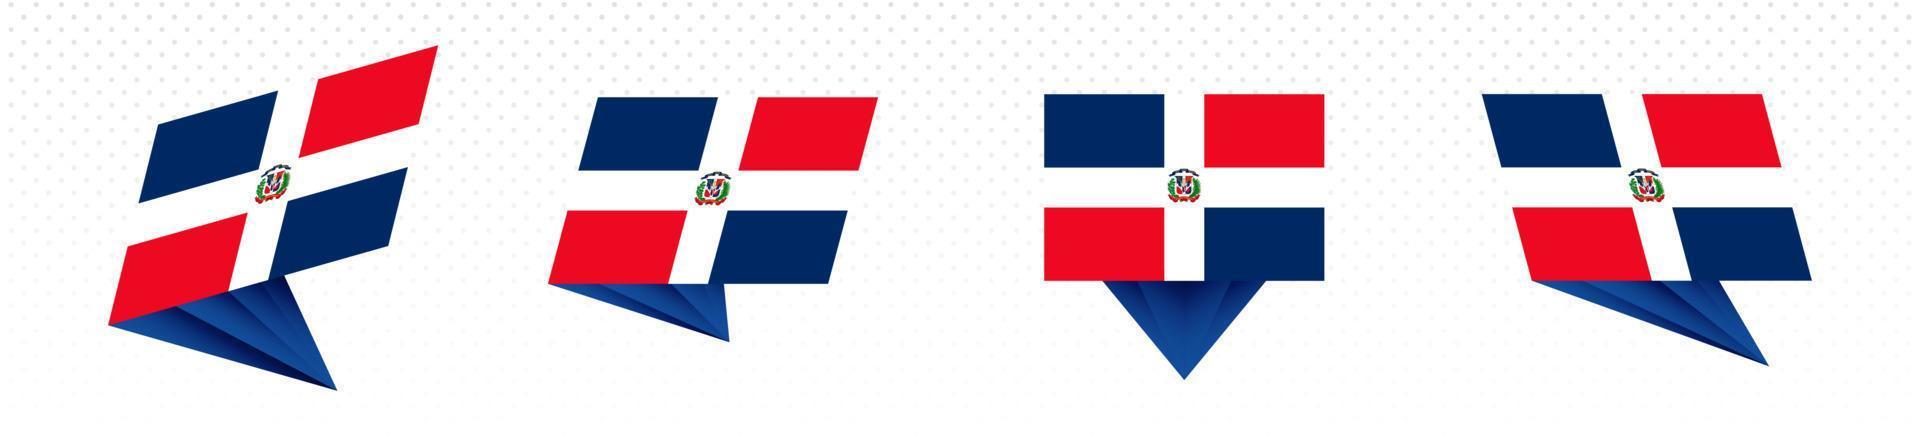 Flagge der Dominikanischen Republik im modernen abstrakten Design, Flaggensatz. vektor